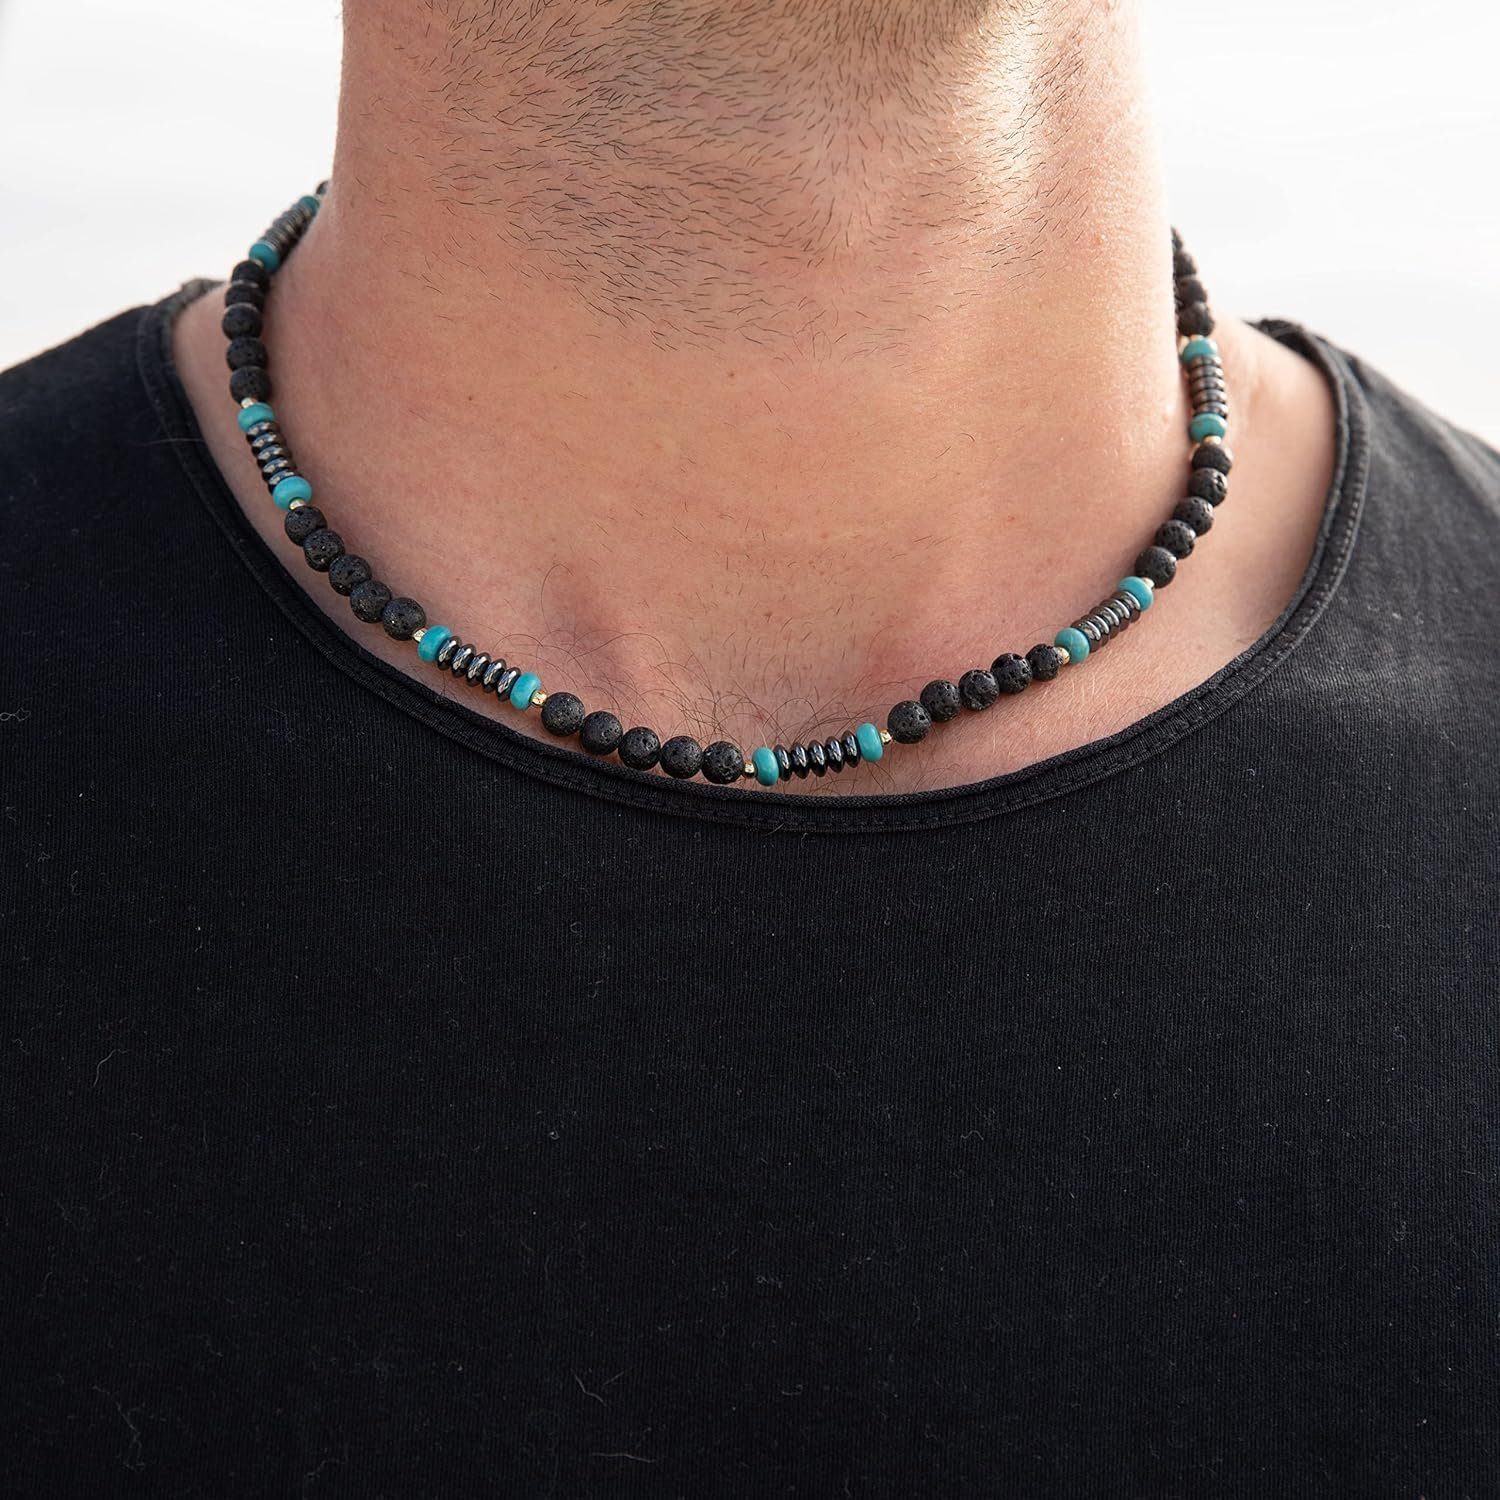 Made by Nami Perlenkette Surfer Halskette mit echten Kokosnussperlen, Herren Damen Strand Schmuck Wasserfest